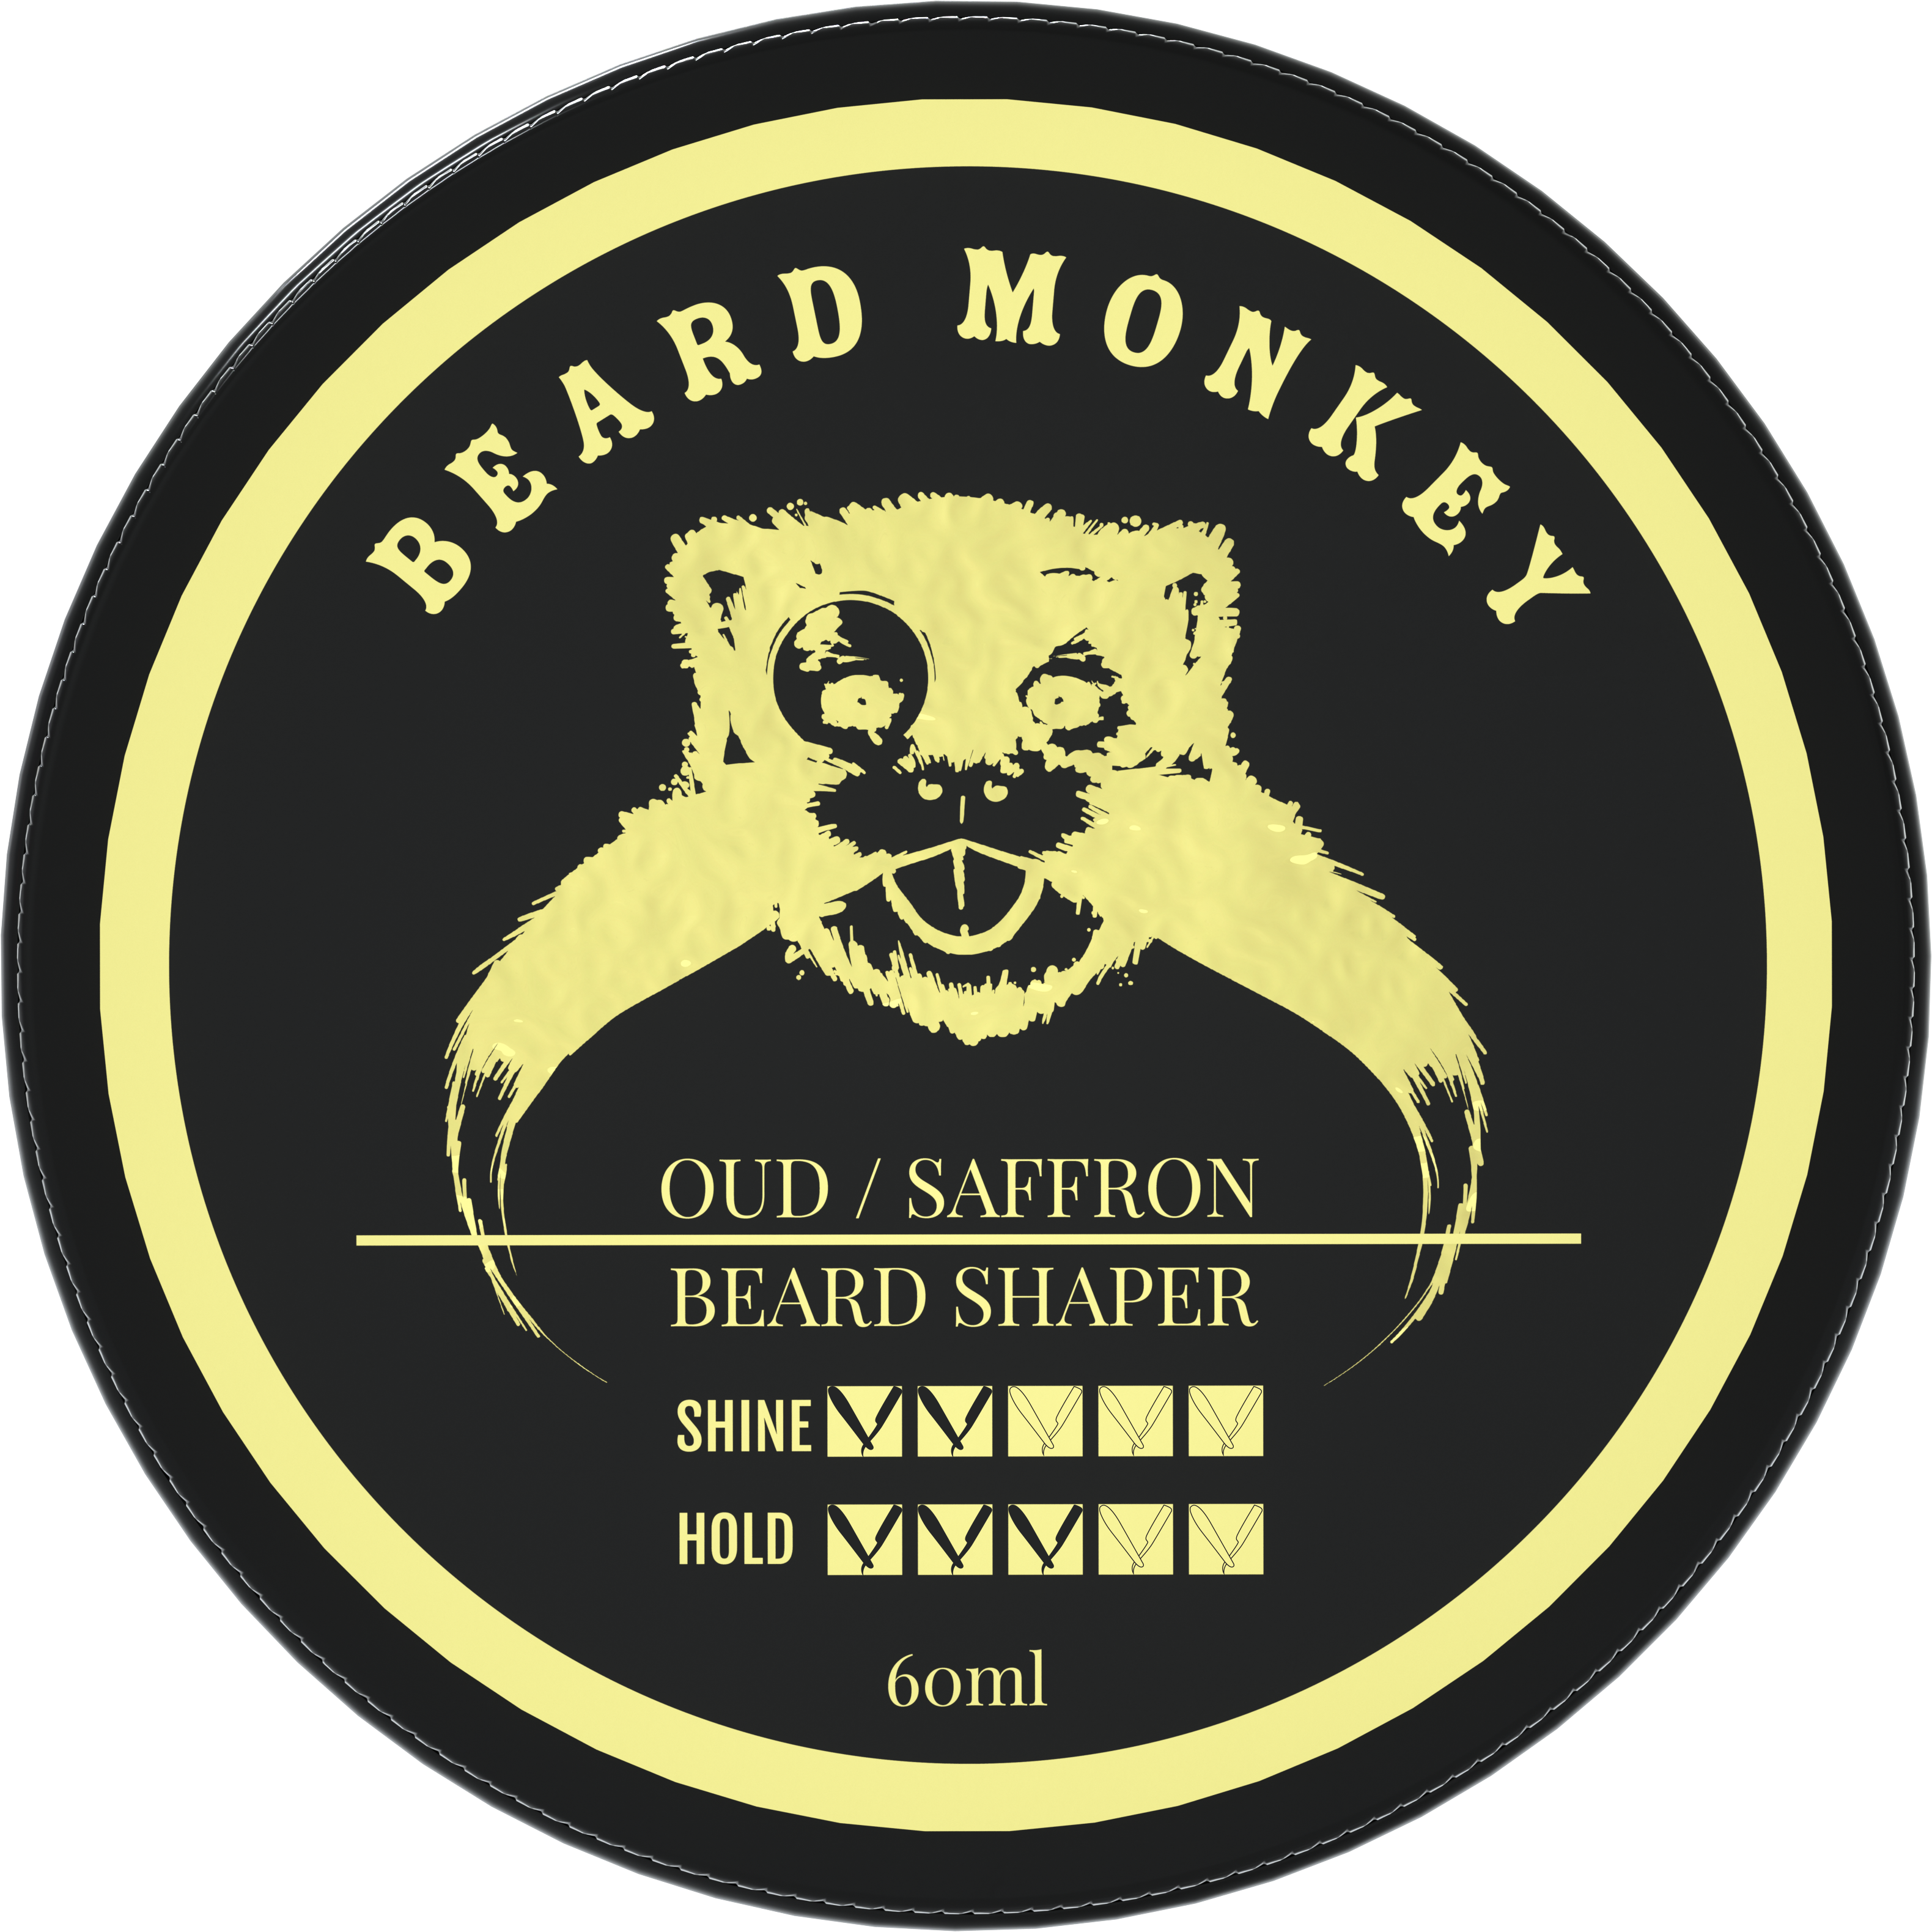 Läs mer om Beard Monkey Monkey Oud / Saffron - Beard Shaper 60 ml